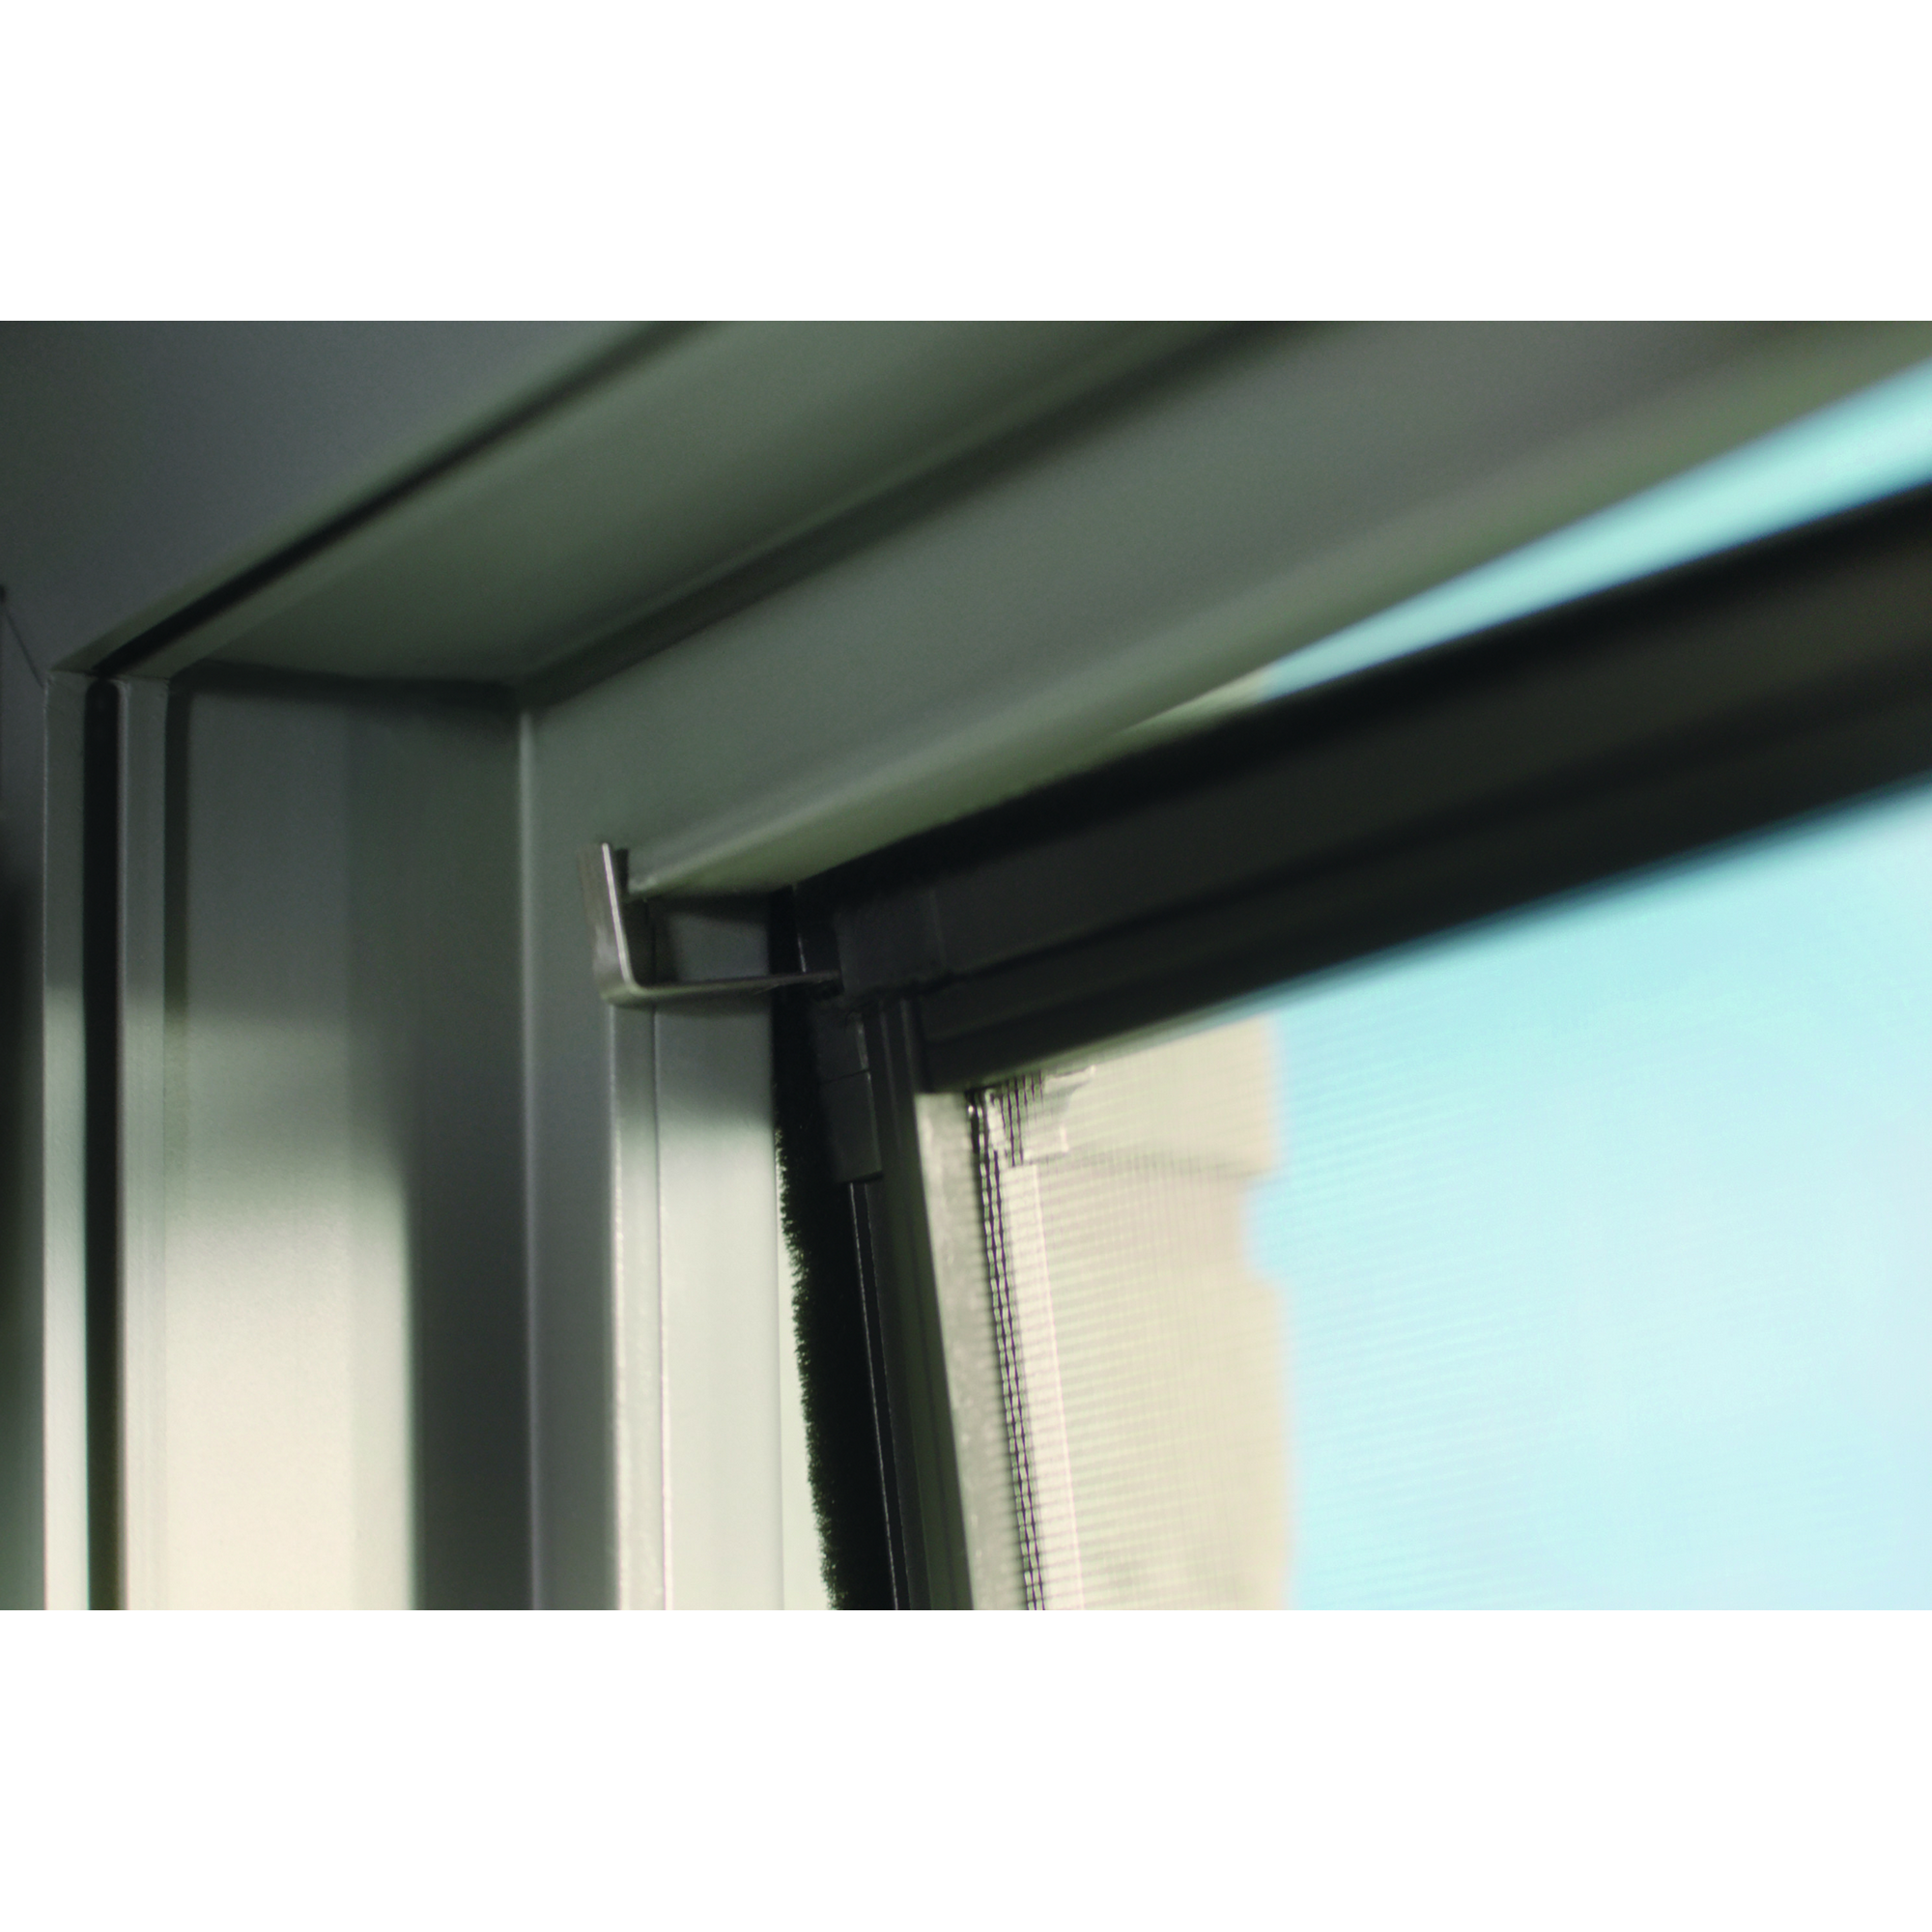 Fensterfliegengitter 'Falt' anthrazit stufenlos von 80 x 80 bis 140 x 140 cm + product picture